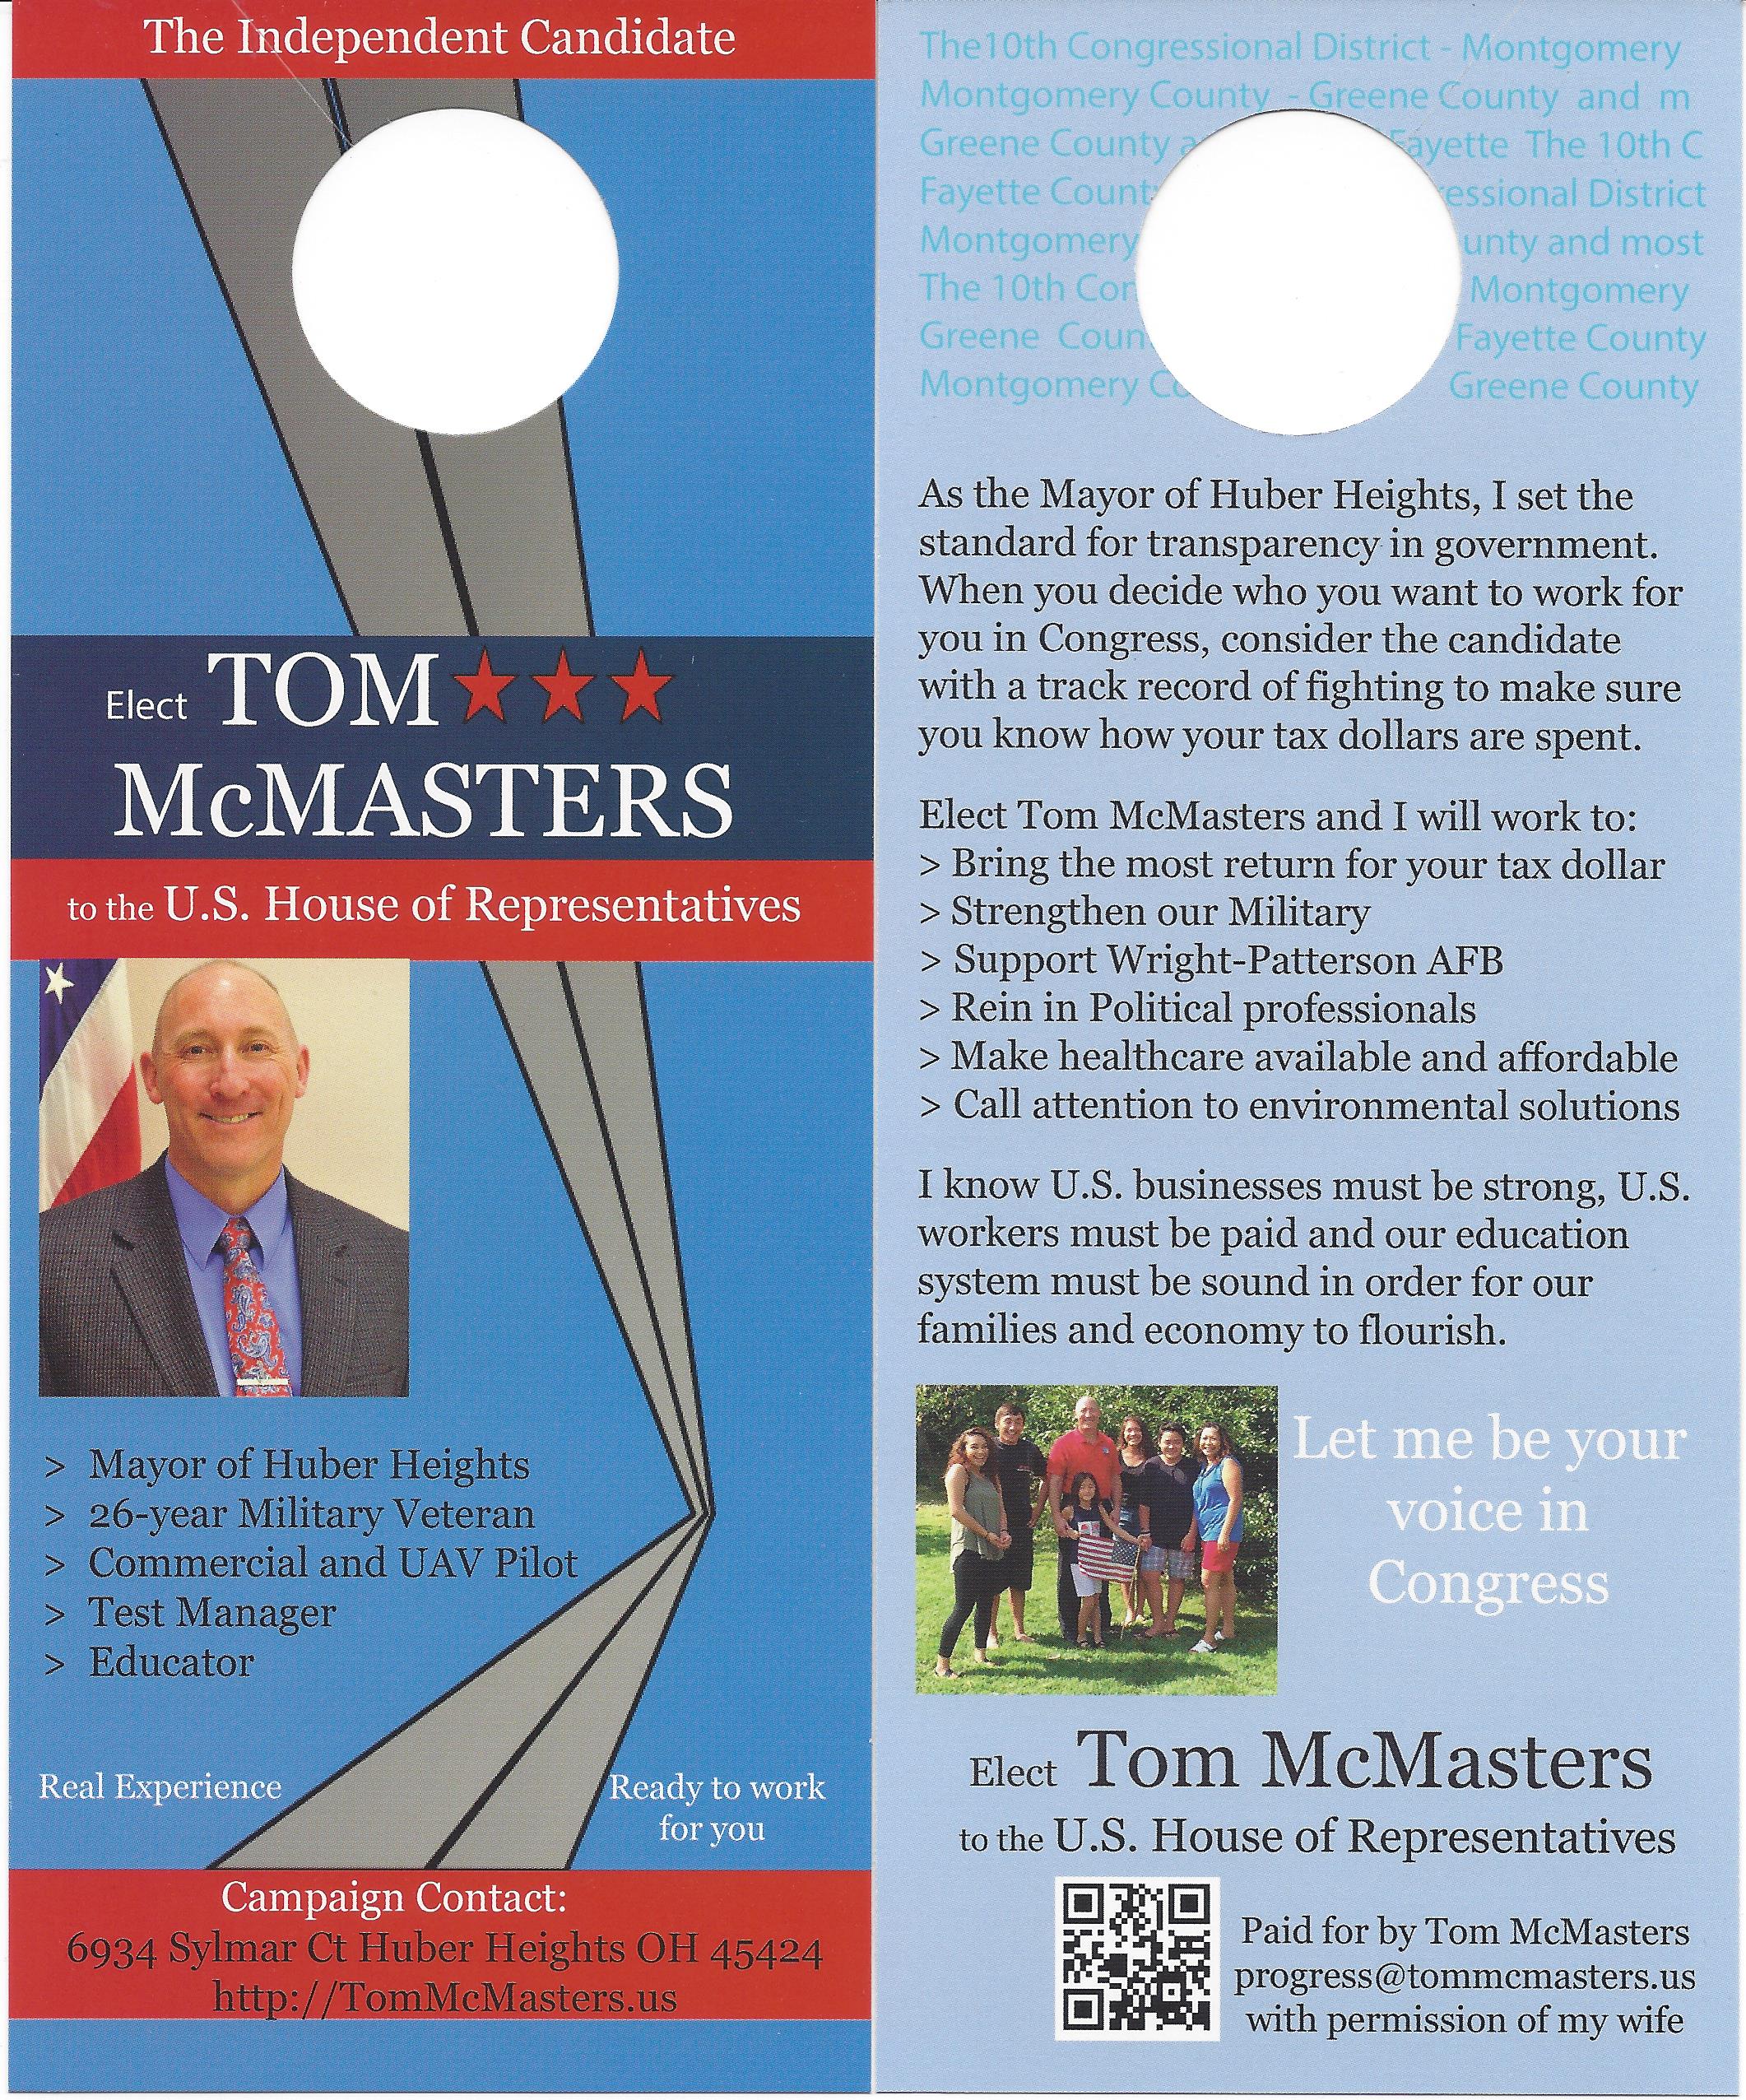 McMasters for Congress door hangers